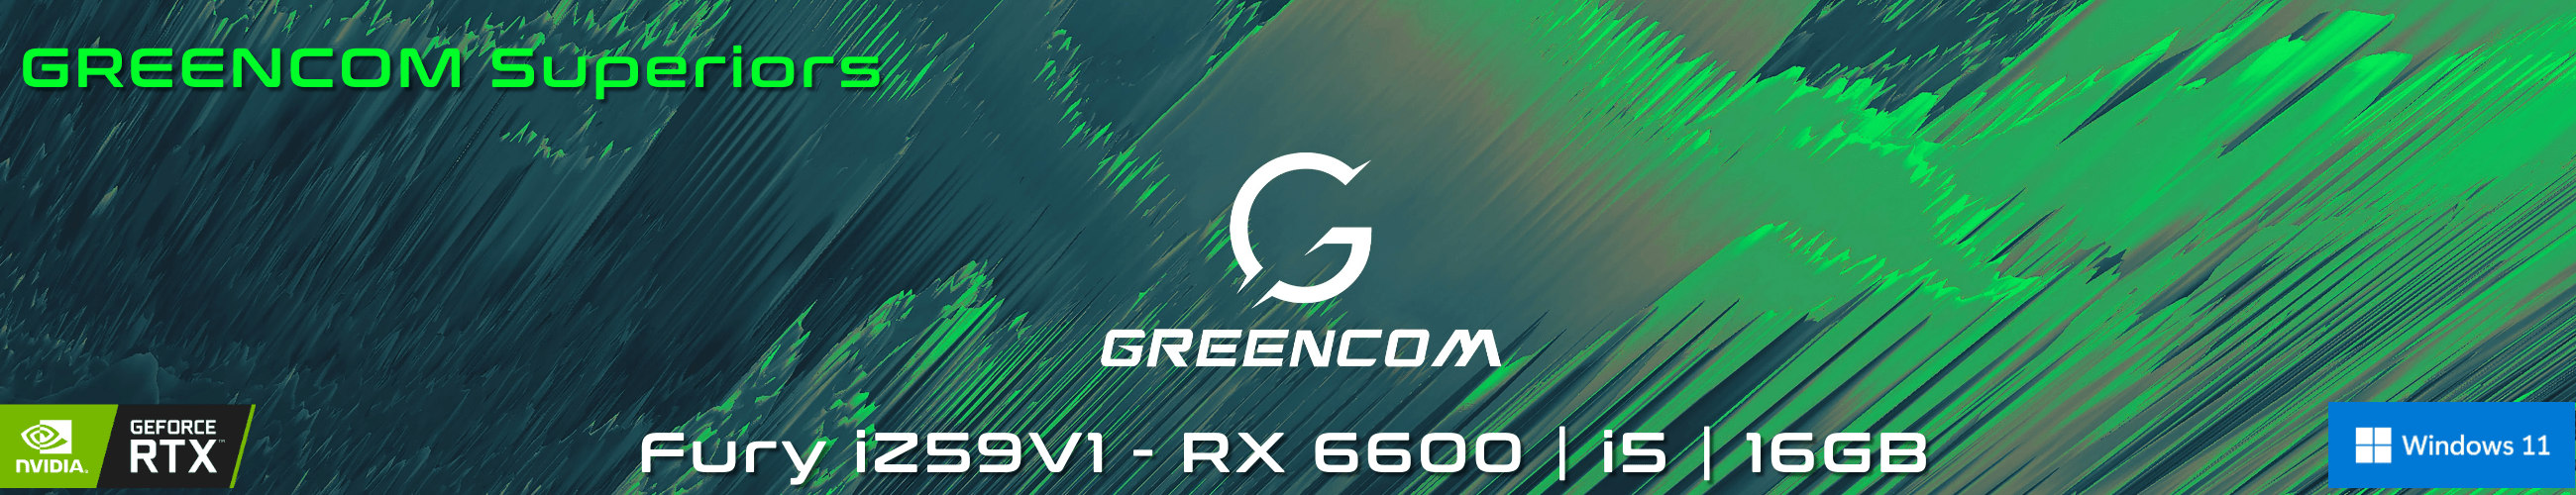 Greencom Fury iZ59V1